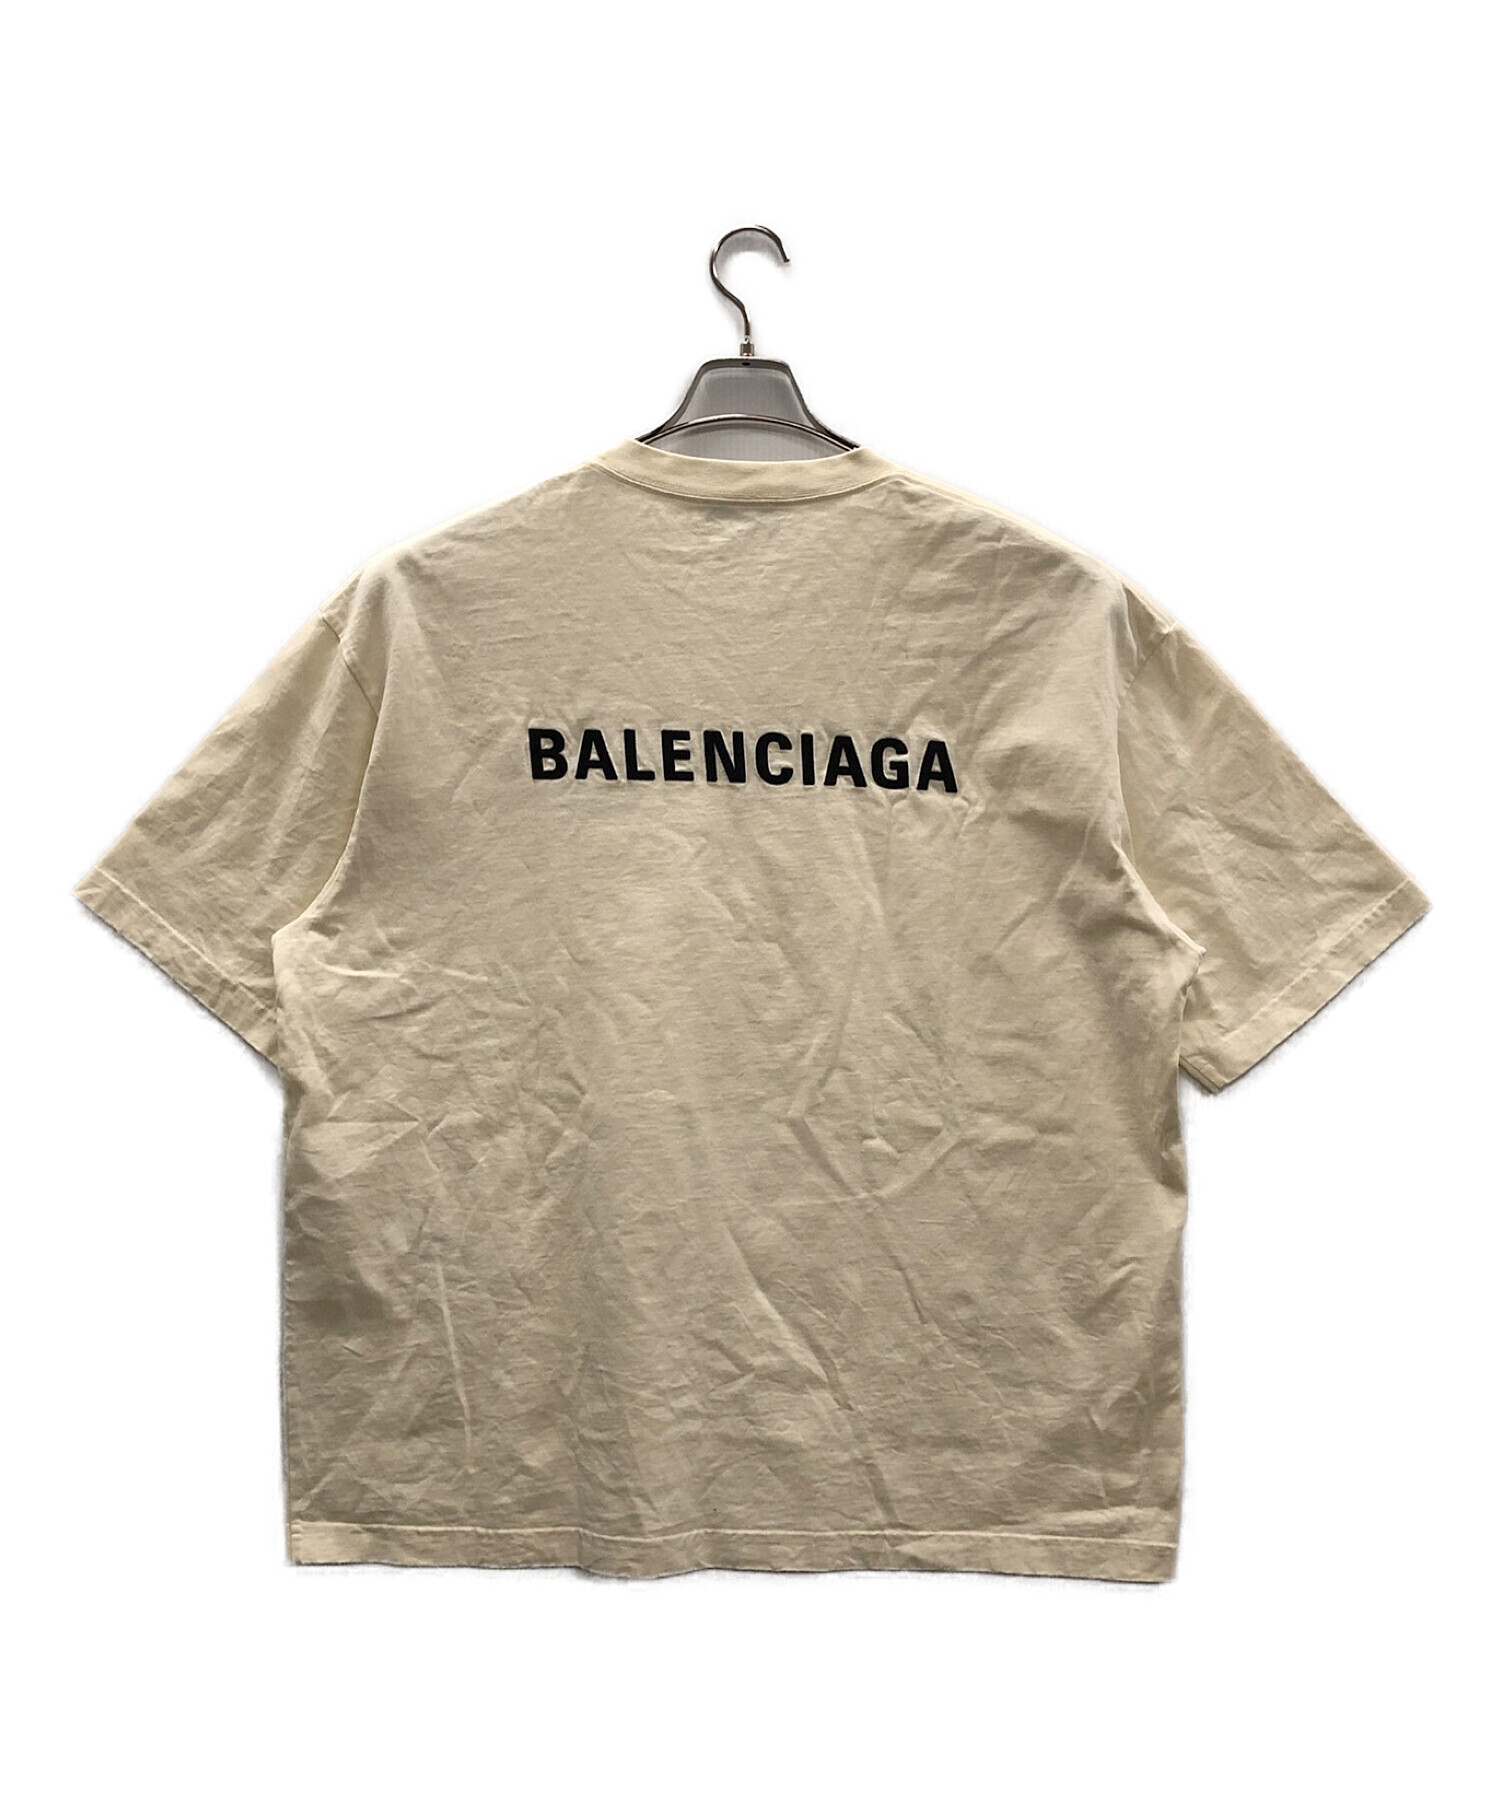 バレンシアガ/BALENCIAGA  612966 ロゴ 半袖T ブラック XL